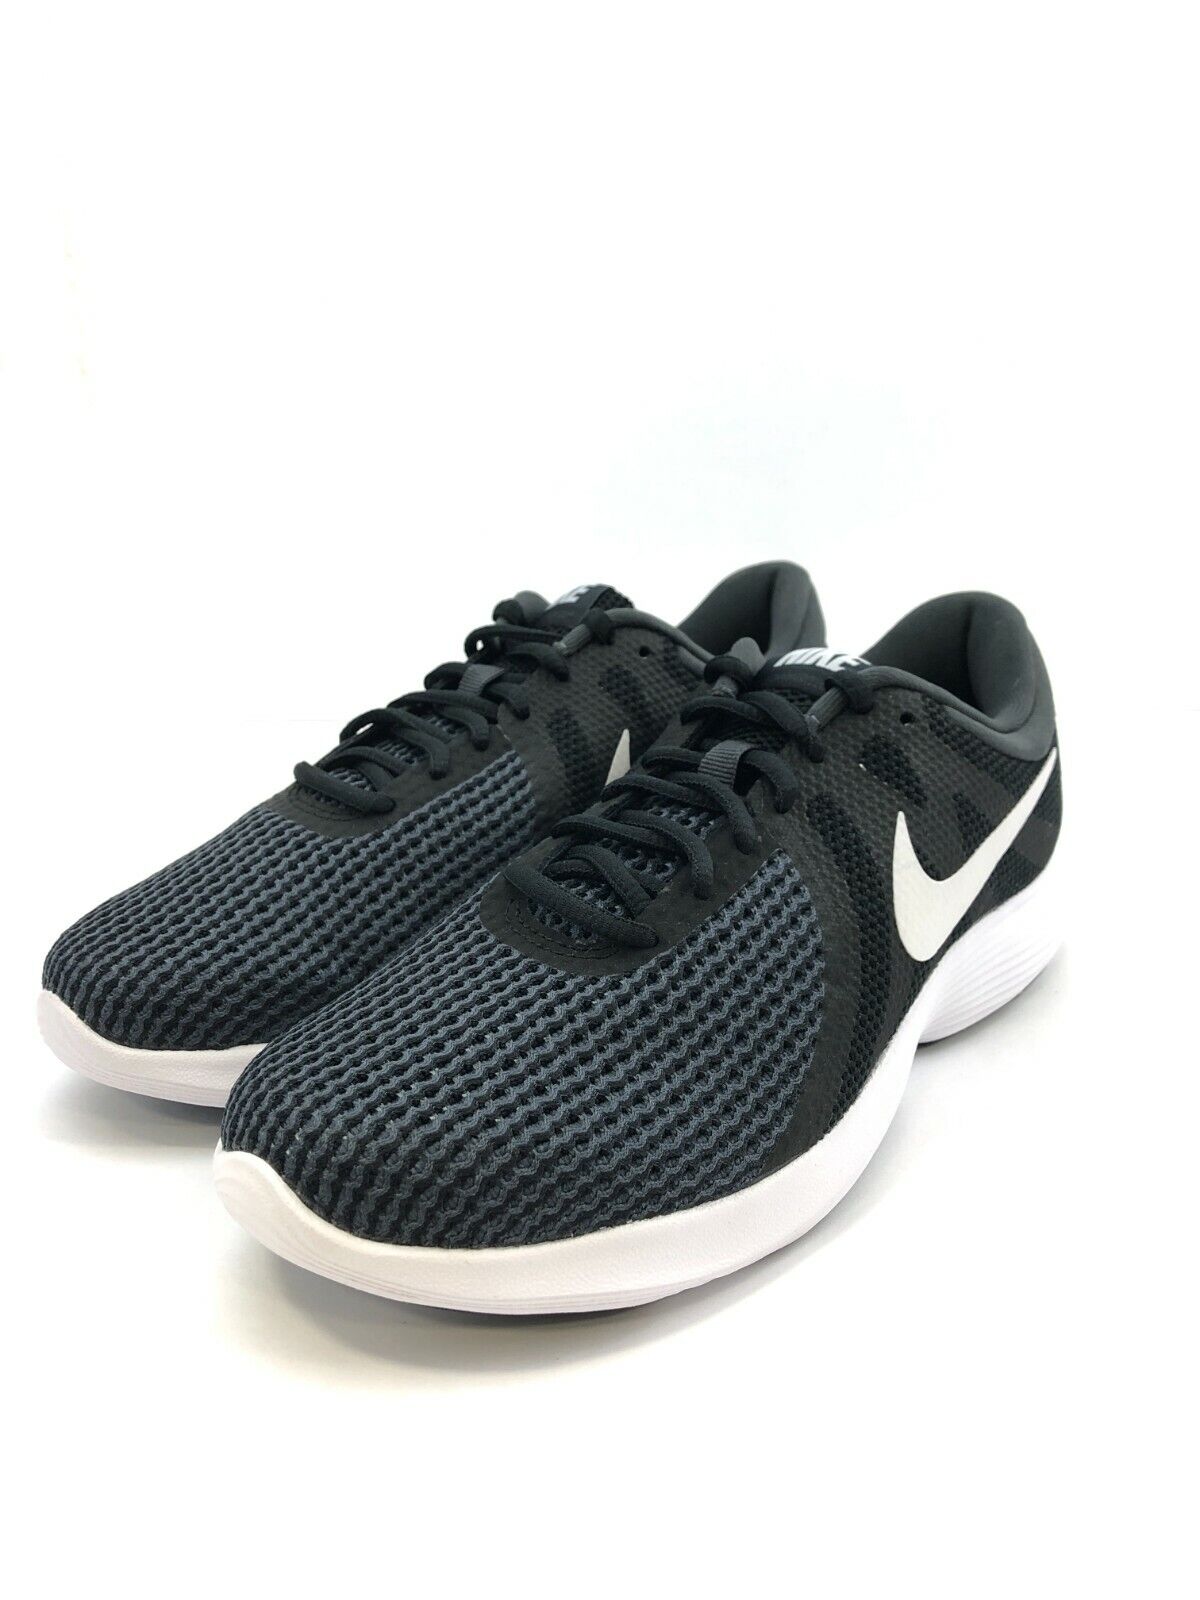 Pórtico Peligro Perforar Nike Men&#039;s Revolution 4 Running Shoe Black/White-Anthracite Size 7 US  908988-001 | eBay